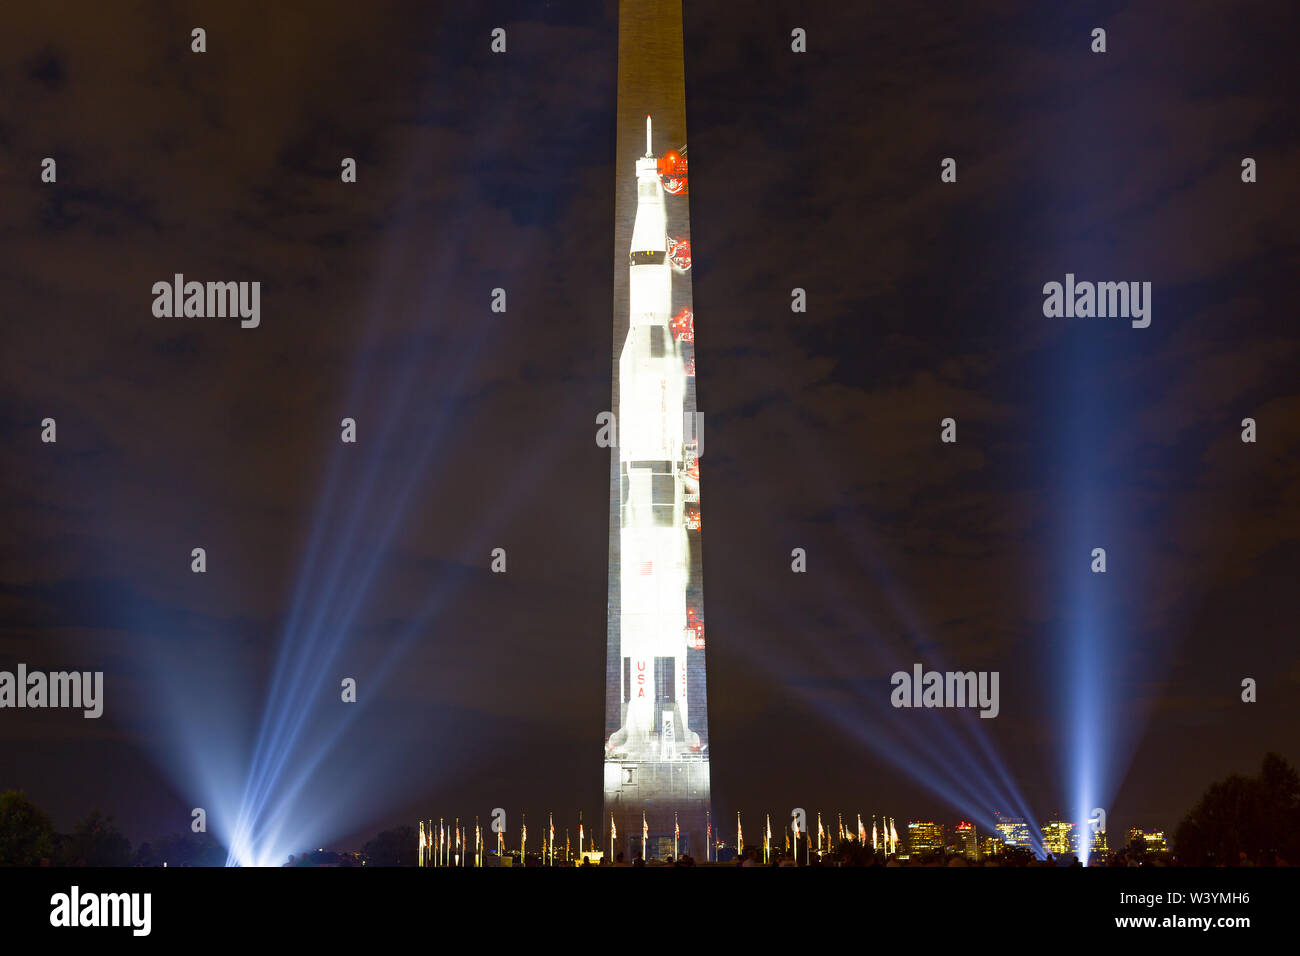 Eine Projektion der Saturn V Rakete Bild auf der Ostseite des Washington Monument des 50. Jahrestages der Apollo Mondlandung zu feiern. Stockfoto